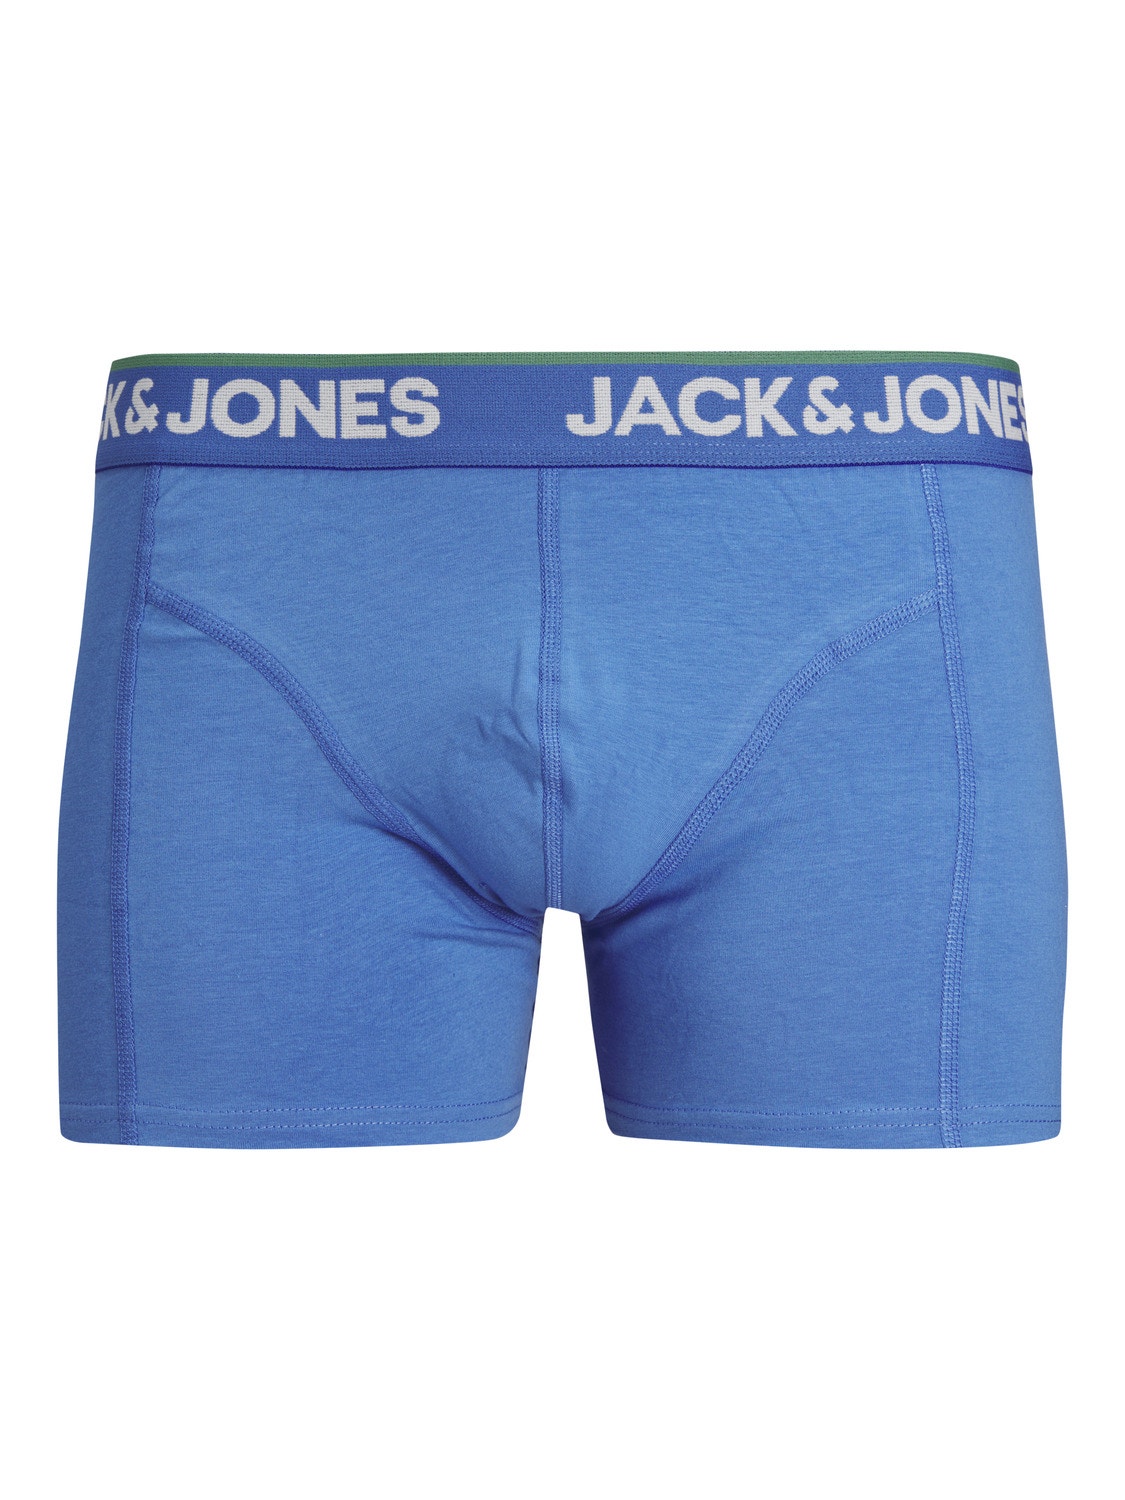 Jack & Jones 3-pakuotės Trumpikės -Palace Blue - 12255839